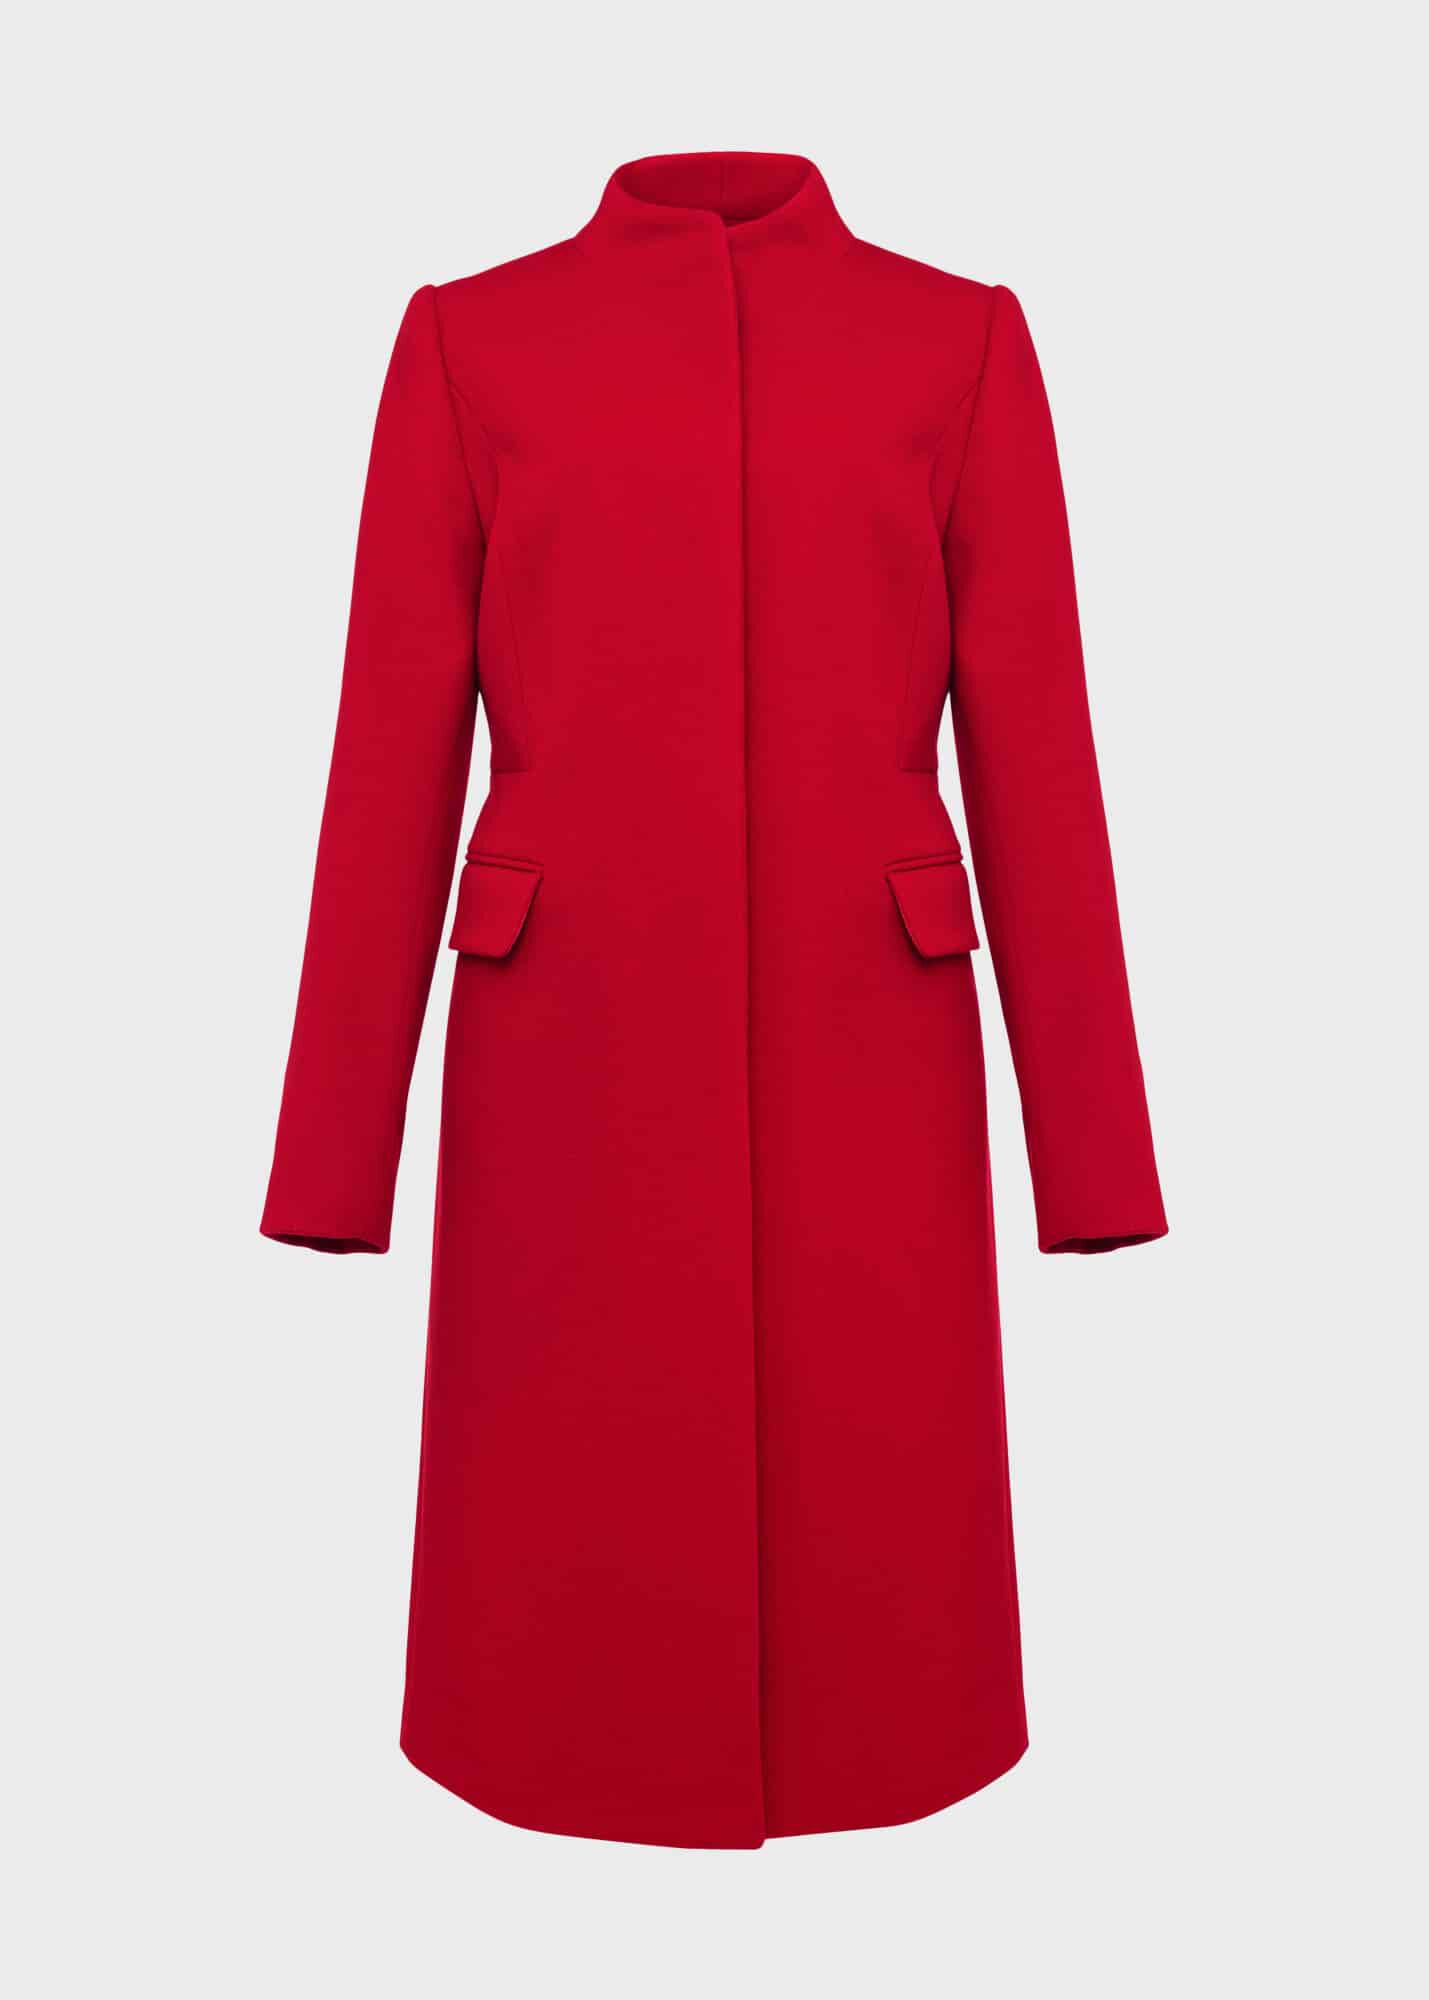 Rhiannon Wool Blend Coat